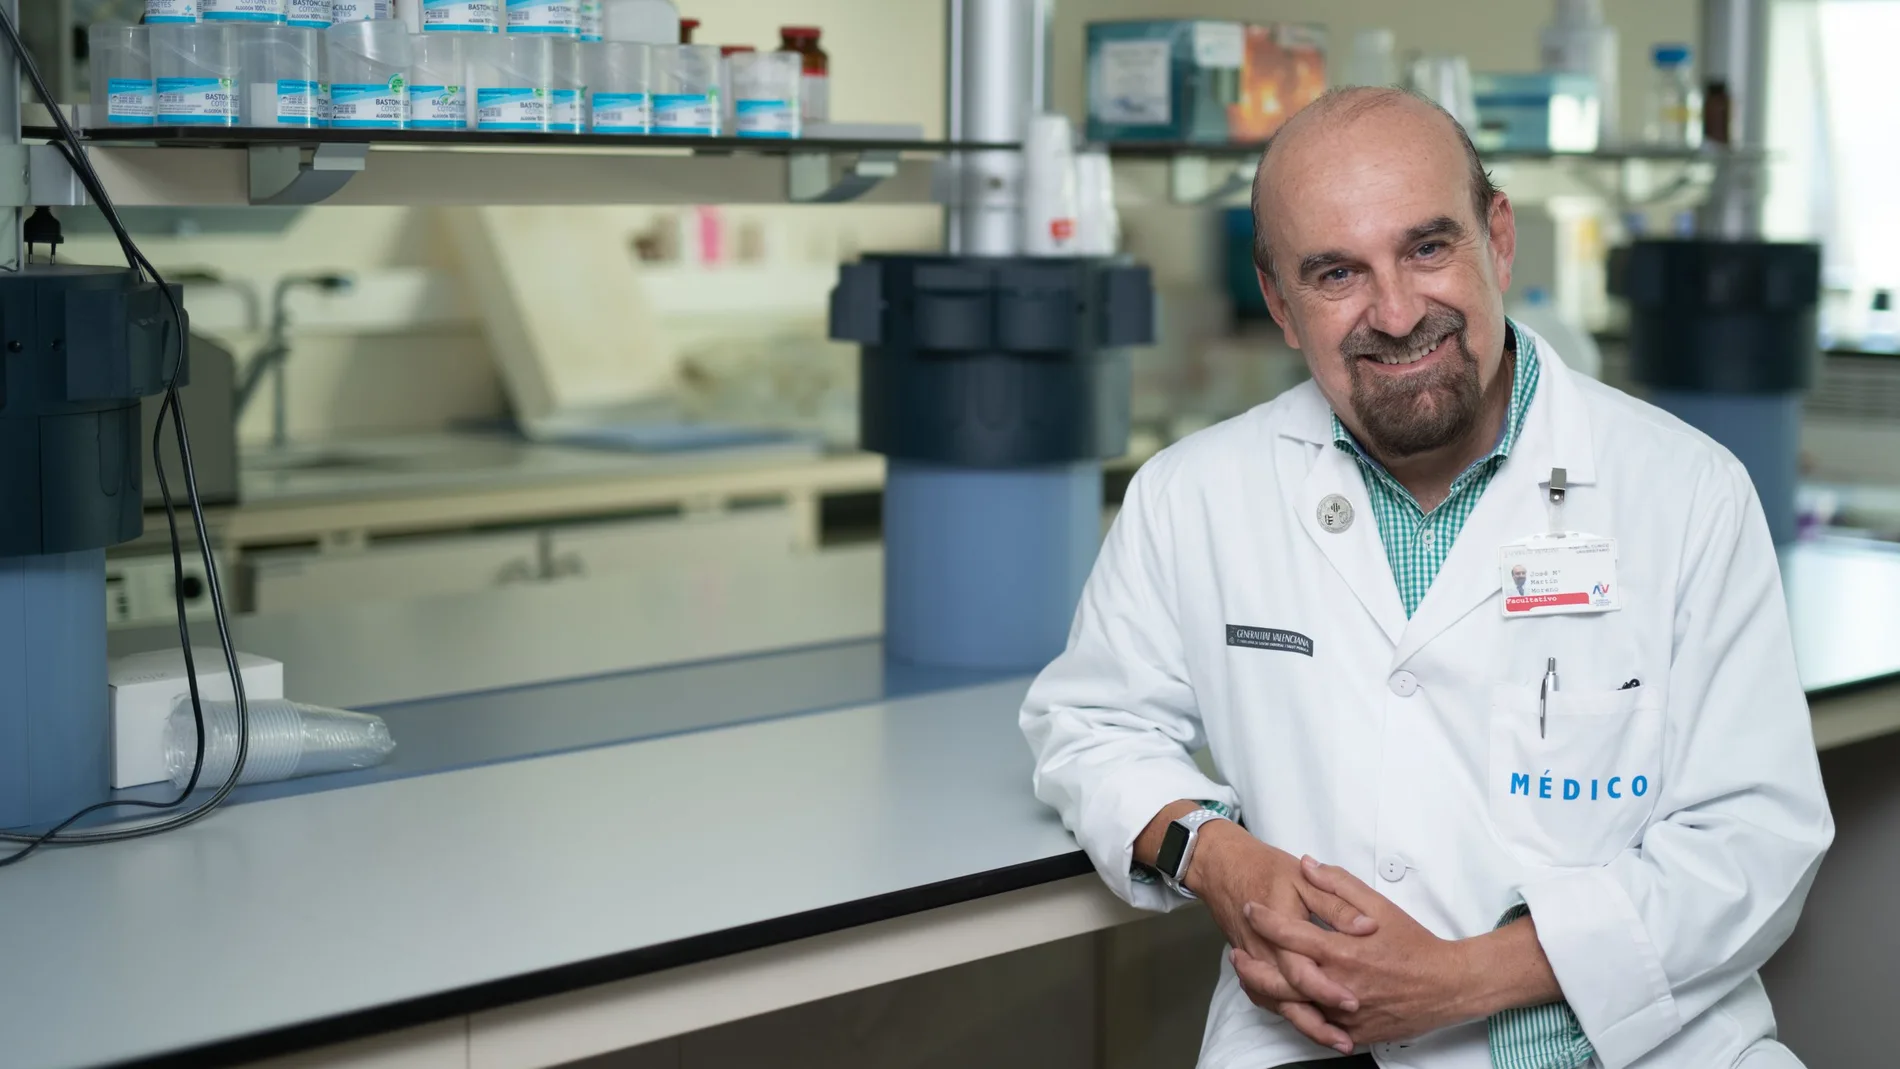 El doctor José María Martín-Moreno es uno de los expertos que pide una evaluación independiente de la pandemia